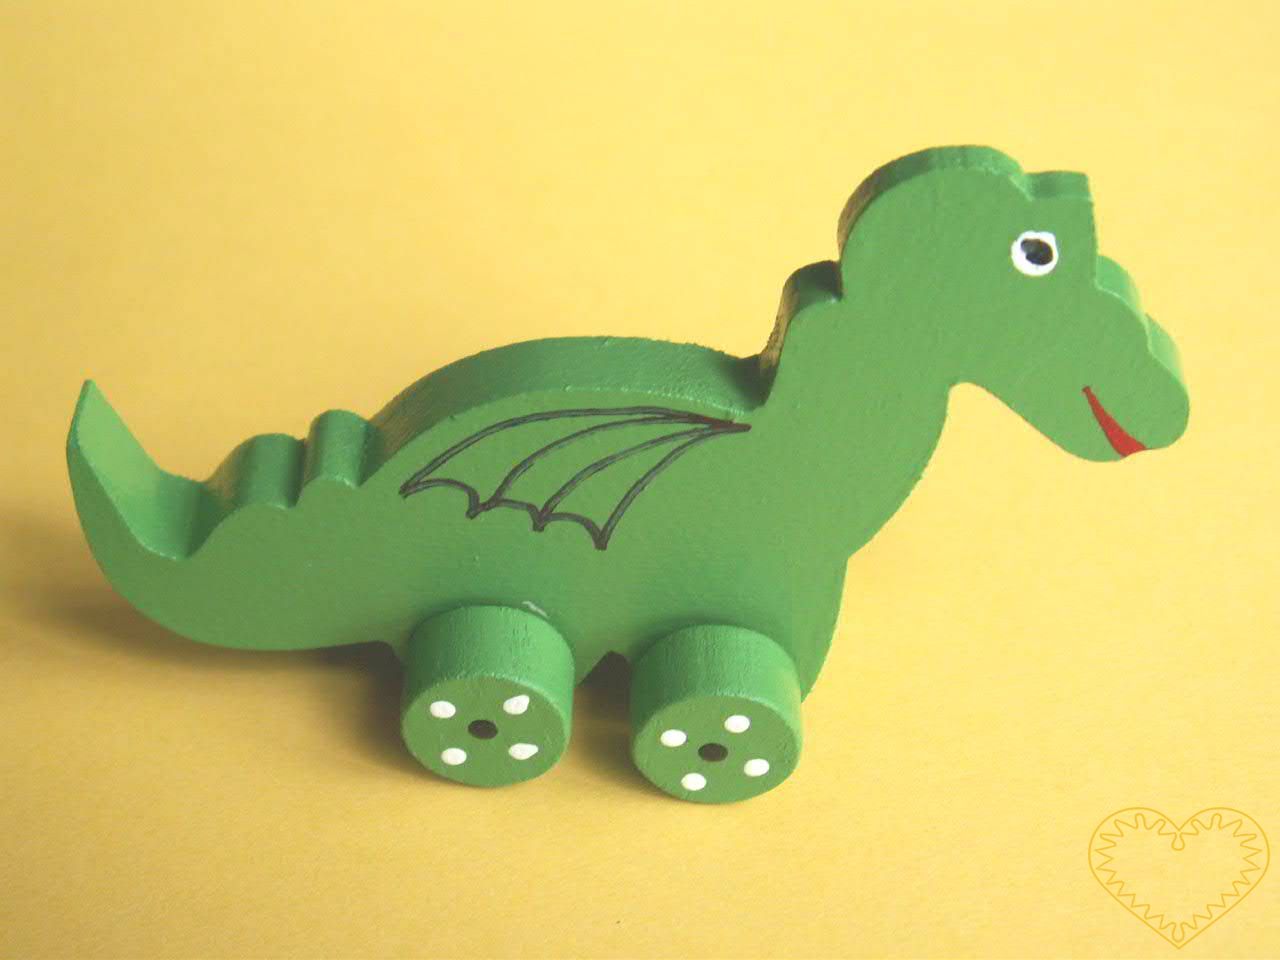 Malé vyřezávané zvířátko na kolečkách - dráček. Drobný malovaný suvenýr vycházející ze vzorů tradičních dětských dřevěných hraček.